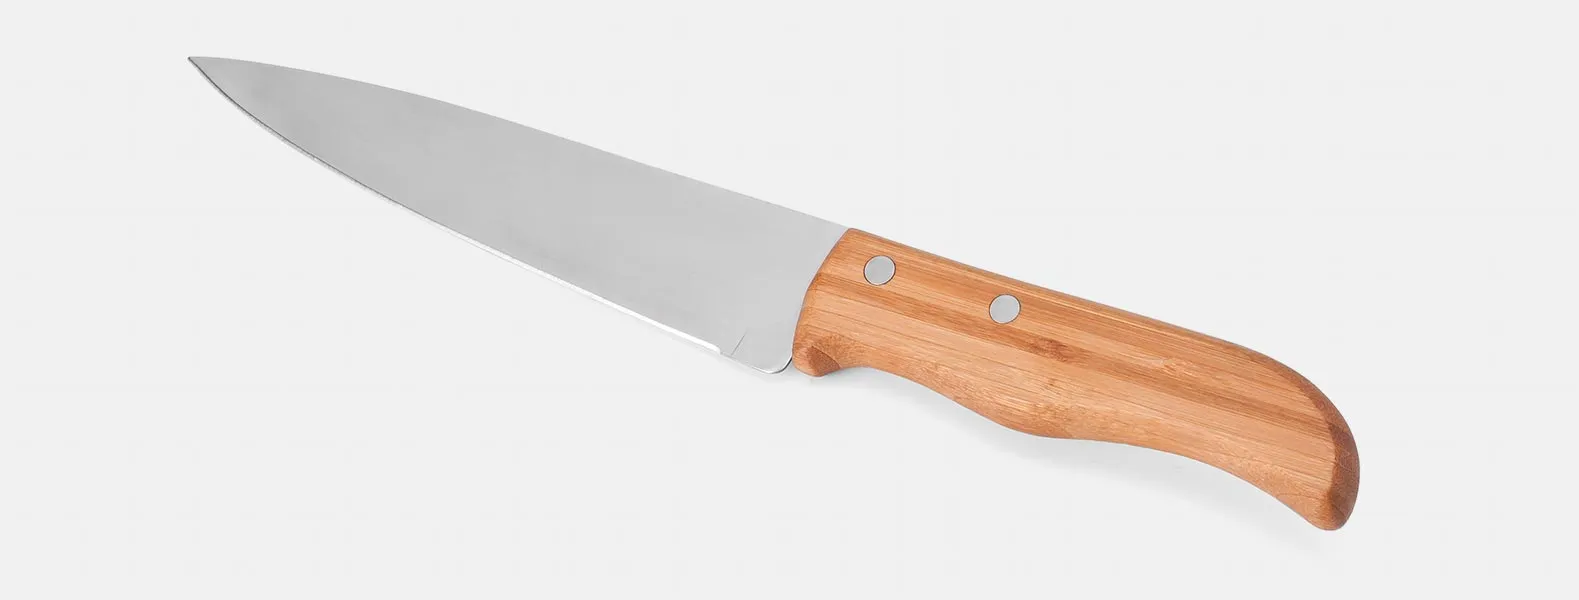 Kit composto por seis peças com cabos em bambu e lâminas em aço Inox com rebites resistentes, sendo uma faca 8”, uma faca 7”, uma faca 5” para desossar, um cutelo 6”, uma faca 4” de frutas e uma faca 3” de legumes. Estão organizados em fita elástica preta no interior de um estojo.